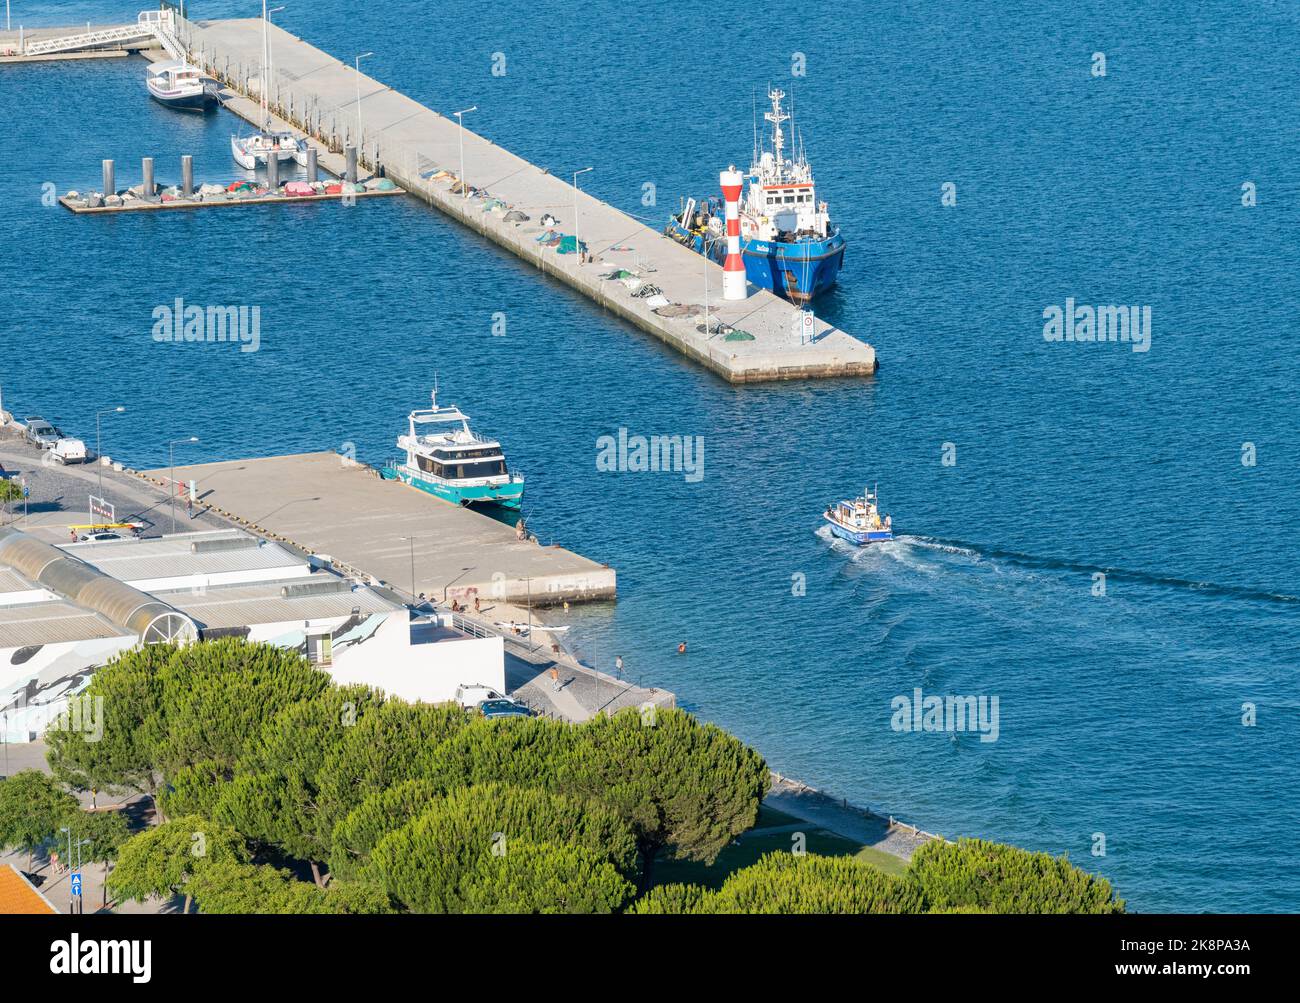 Une vue aérienne des bateaux de pêche par le port de Setubal, Portugal avec de l'eau bleu vif par une journée ensoleillée Banque D'Images